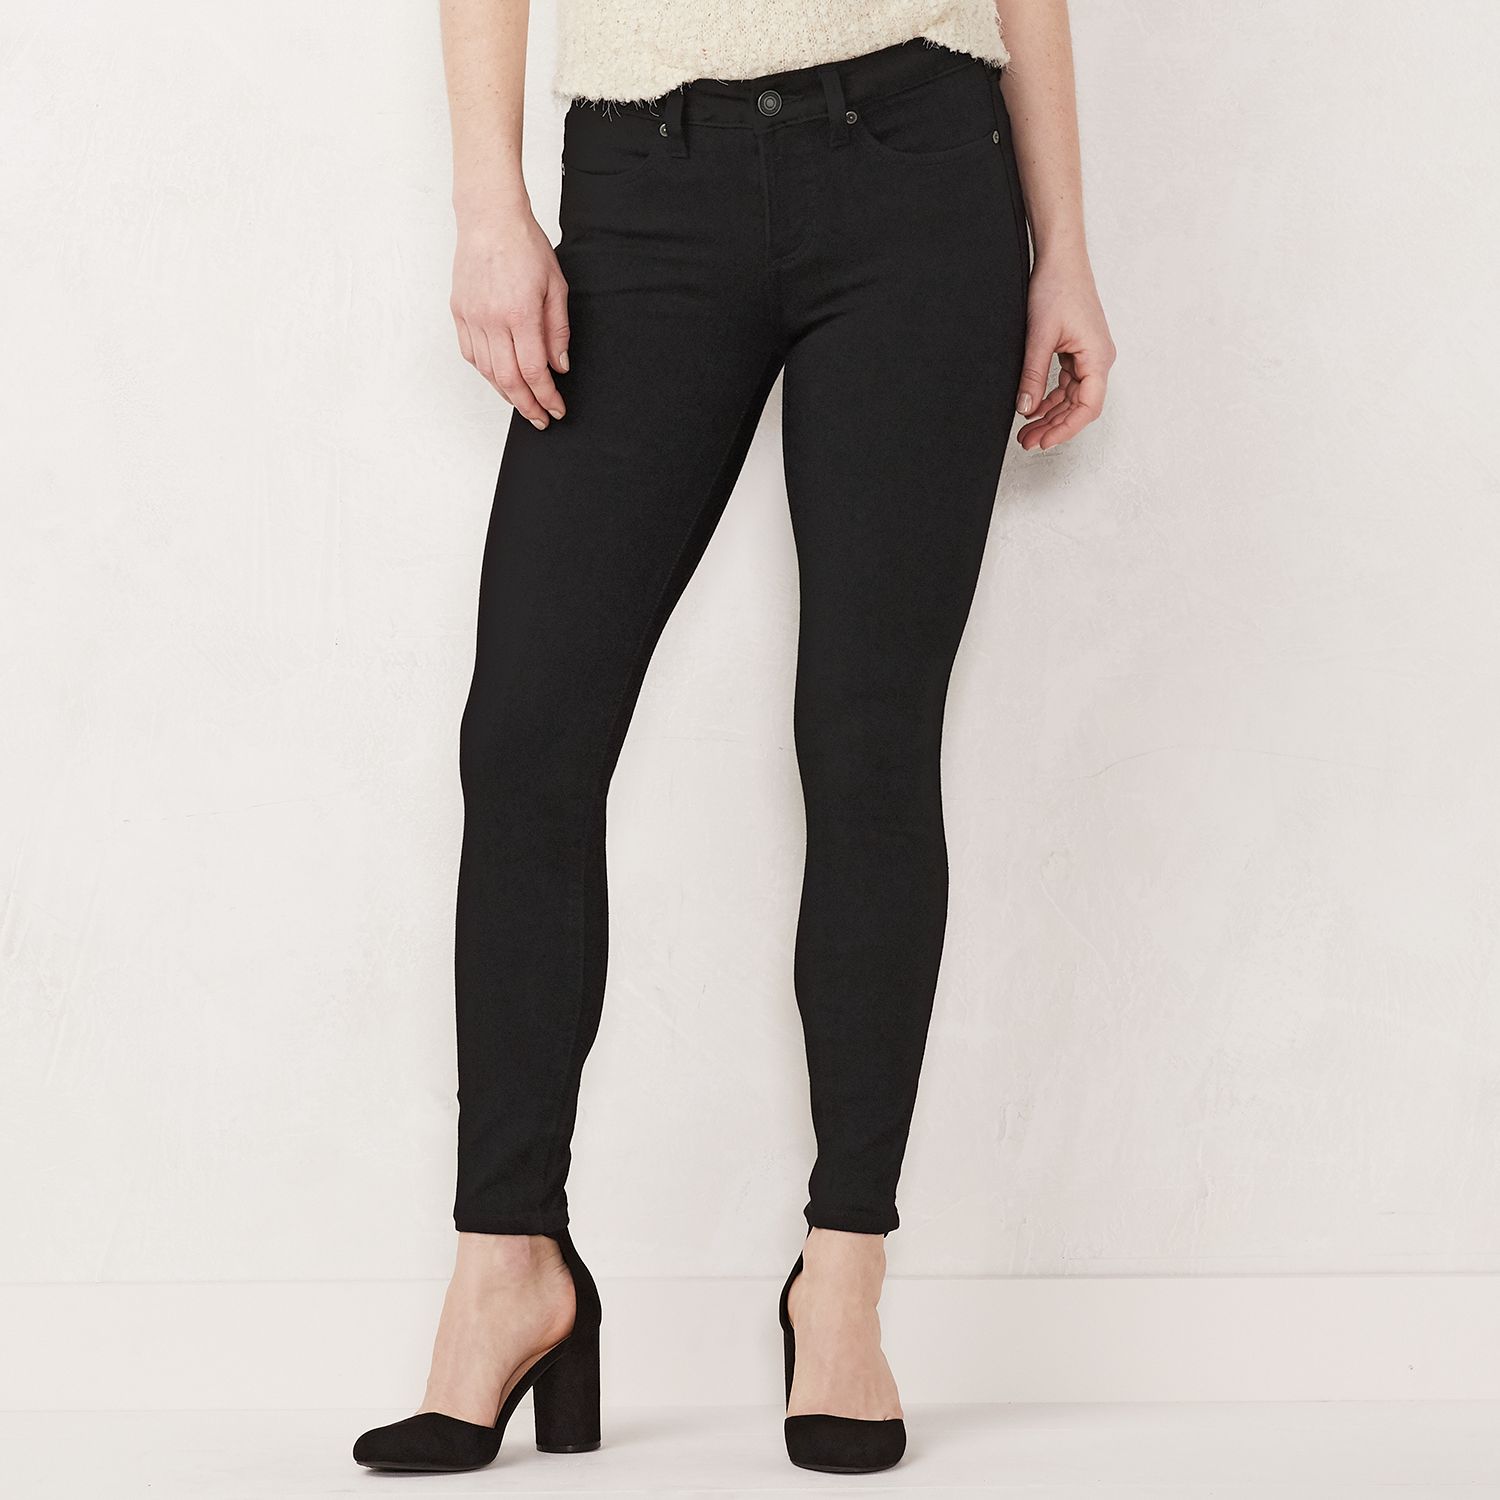 lauren conrad skinny crop jeans